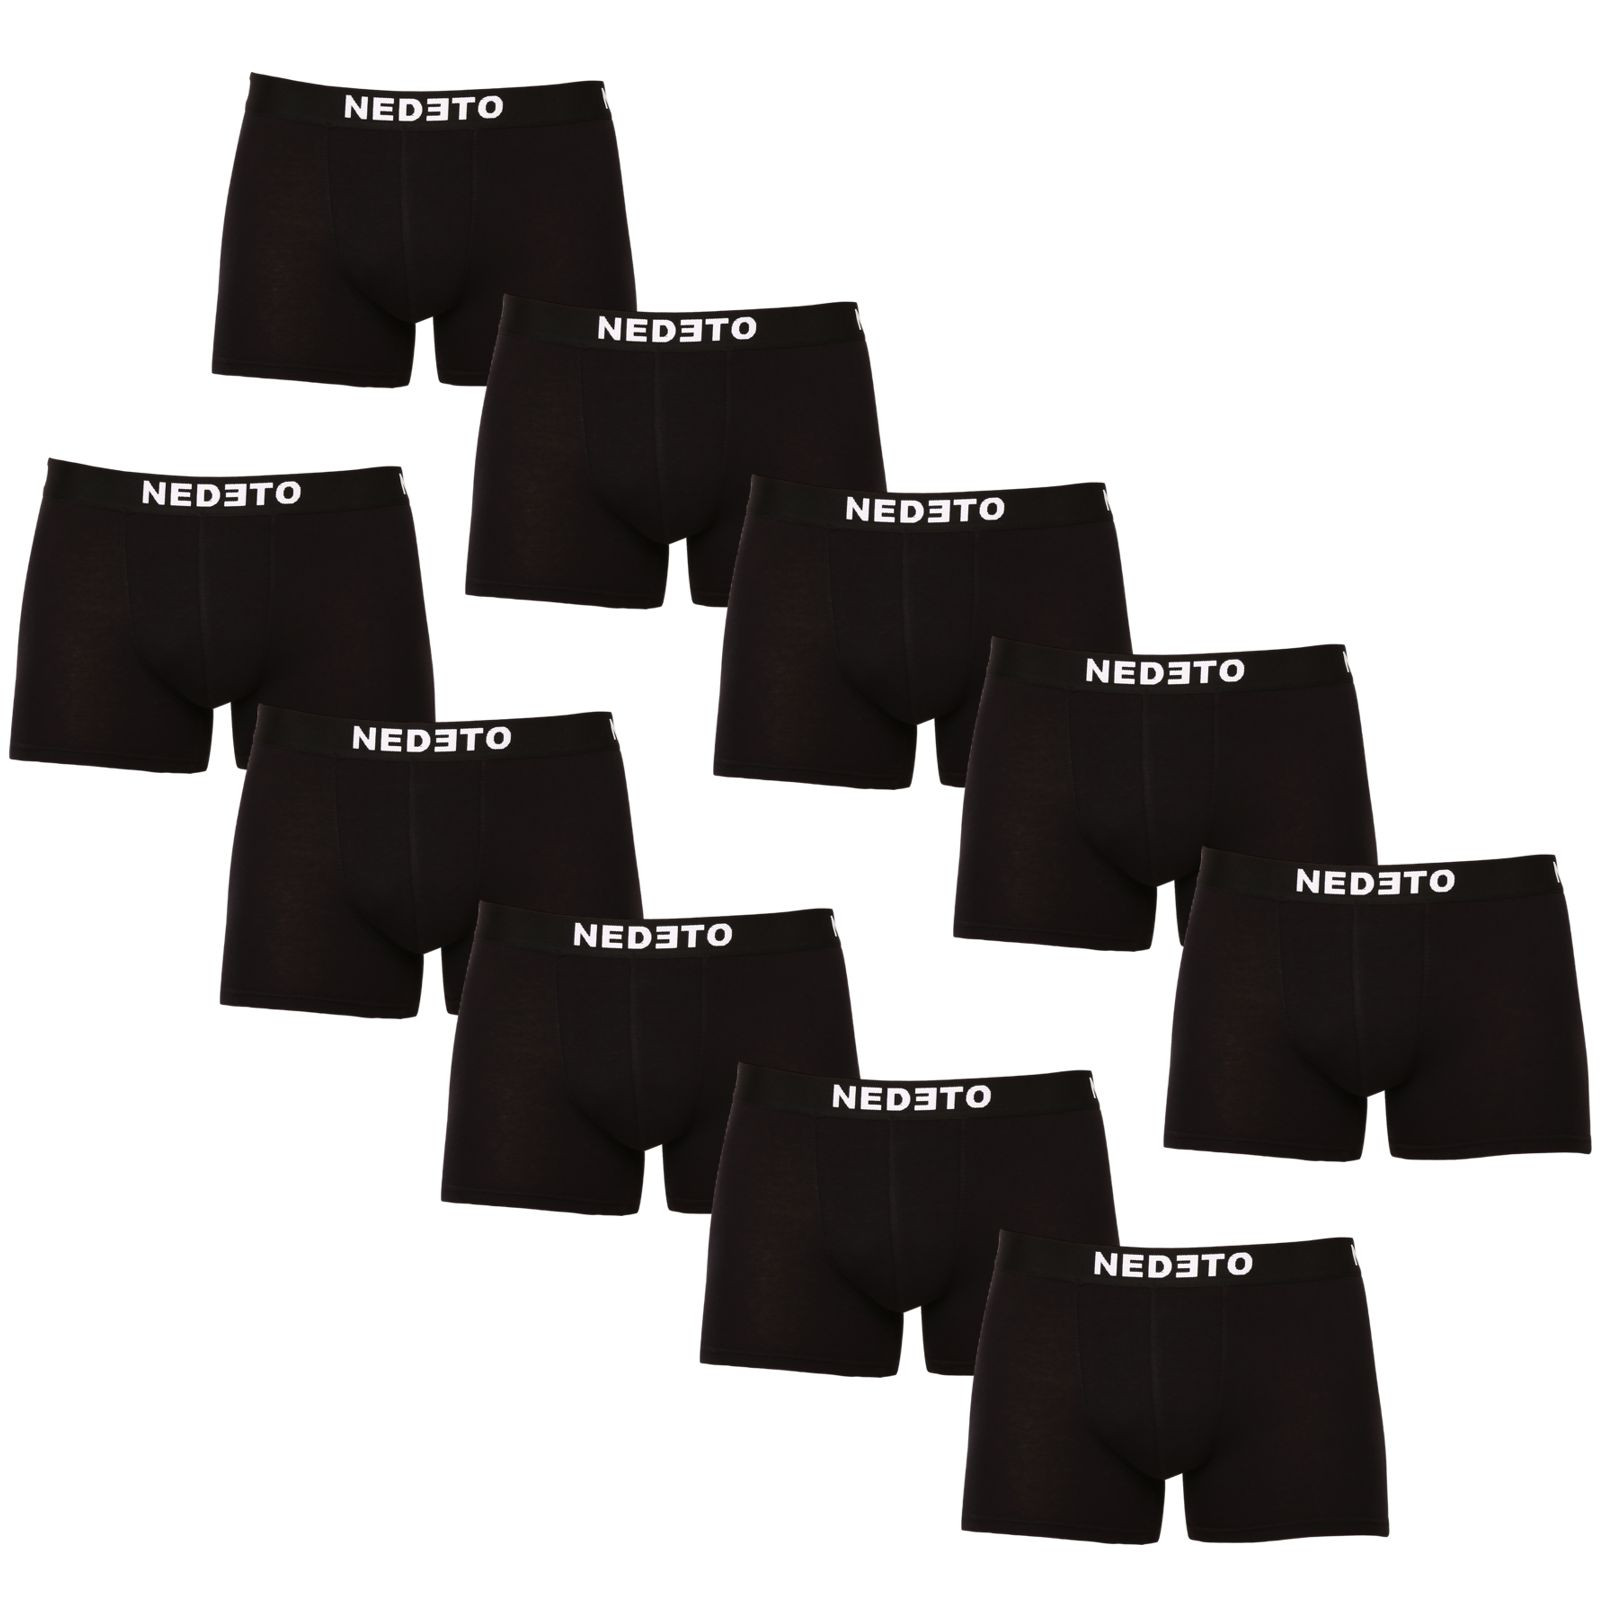 10PACK pánske boxerky Nedeto čierne (10NB001b) M.
Hľadáte kvalitné, ale zároveň cenovo dostupné boxerky?
Boxerky Nedeto sú vyrobené z príjemného materiálu, majú moderný strih, ktorý perfektne padne na každodenné nosenie.